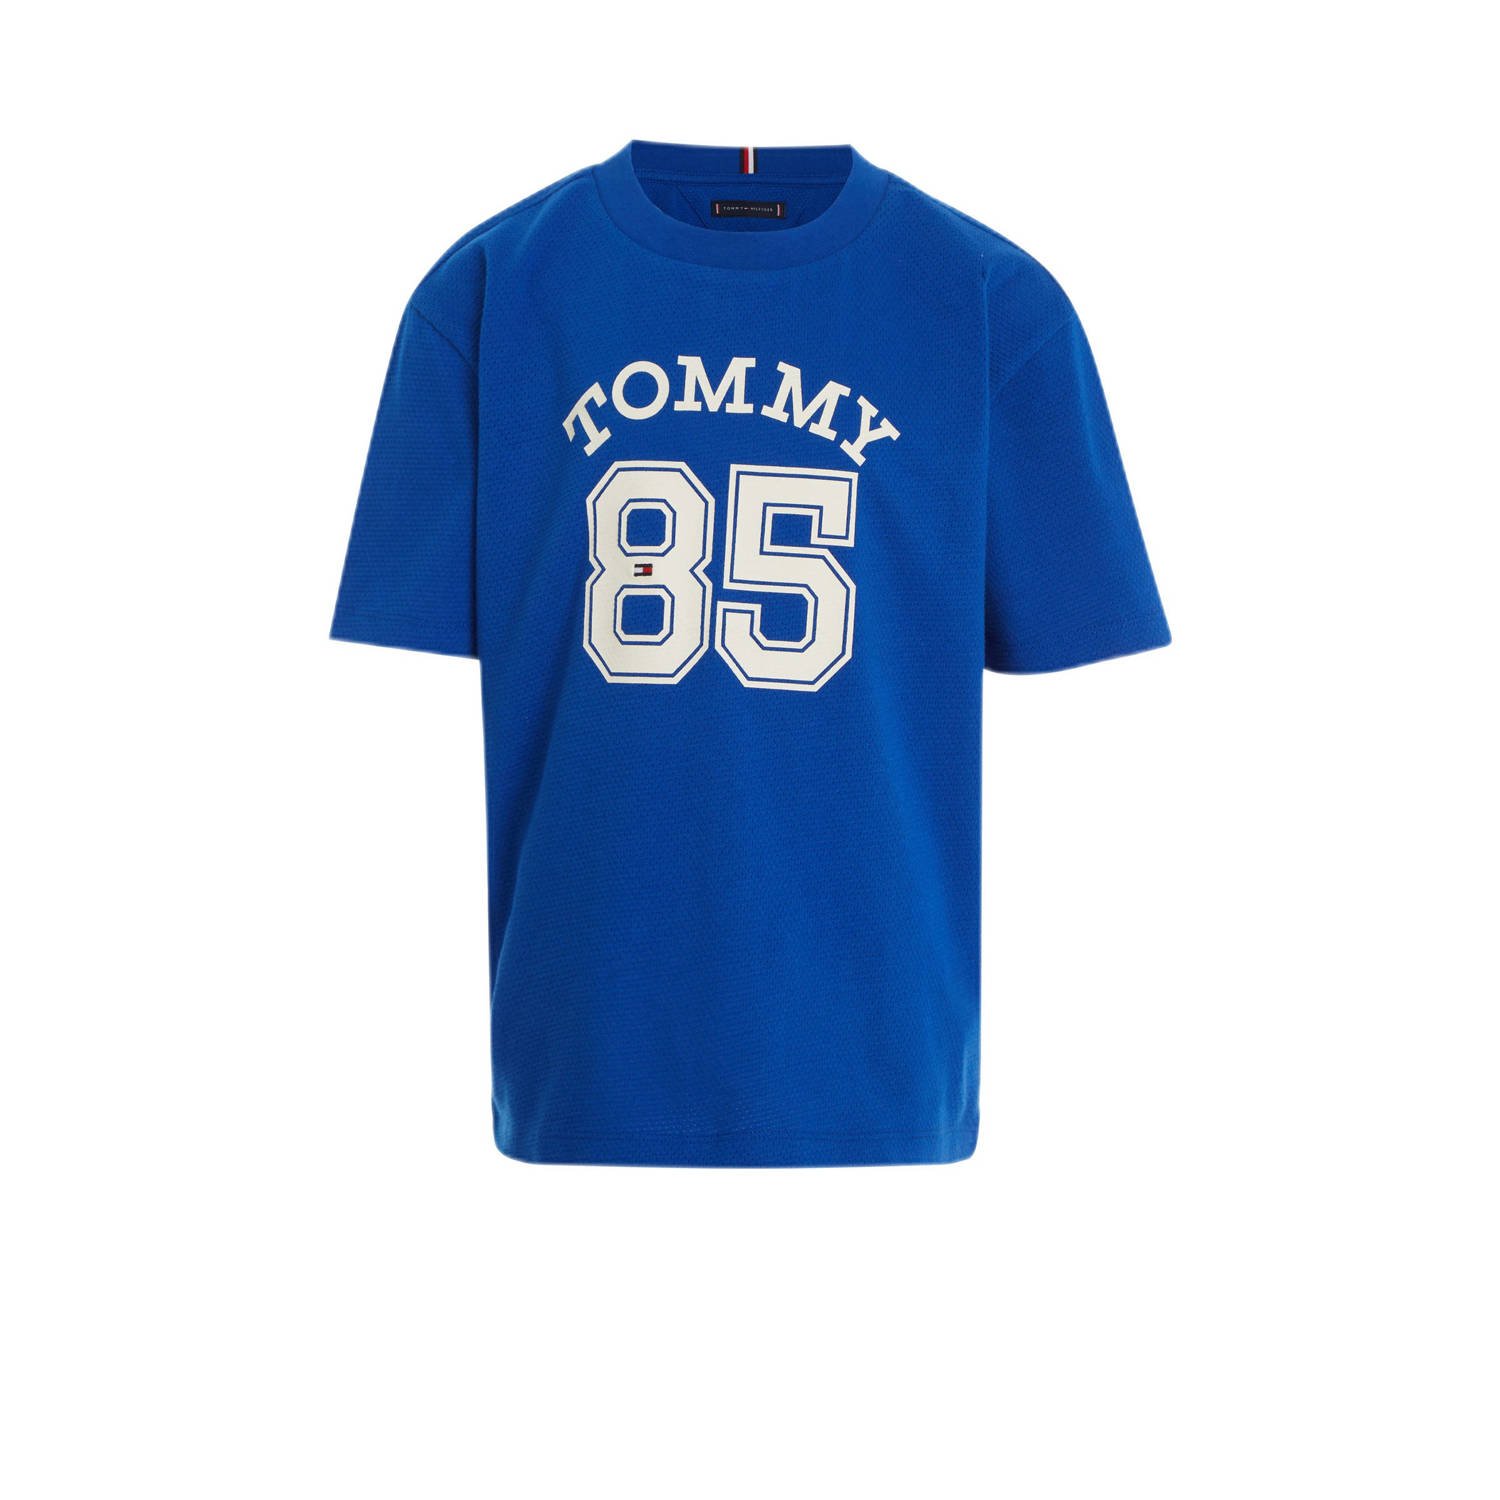 Tommy Hilfiger T-shirt met tekst helderblauw wit